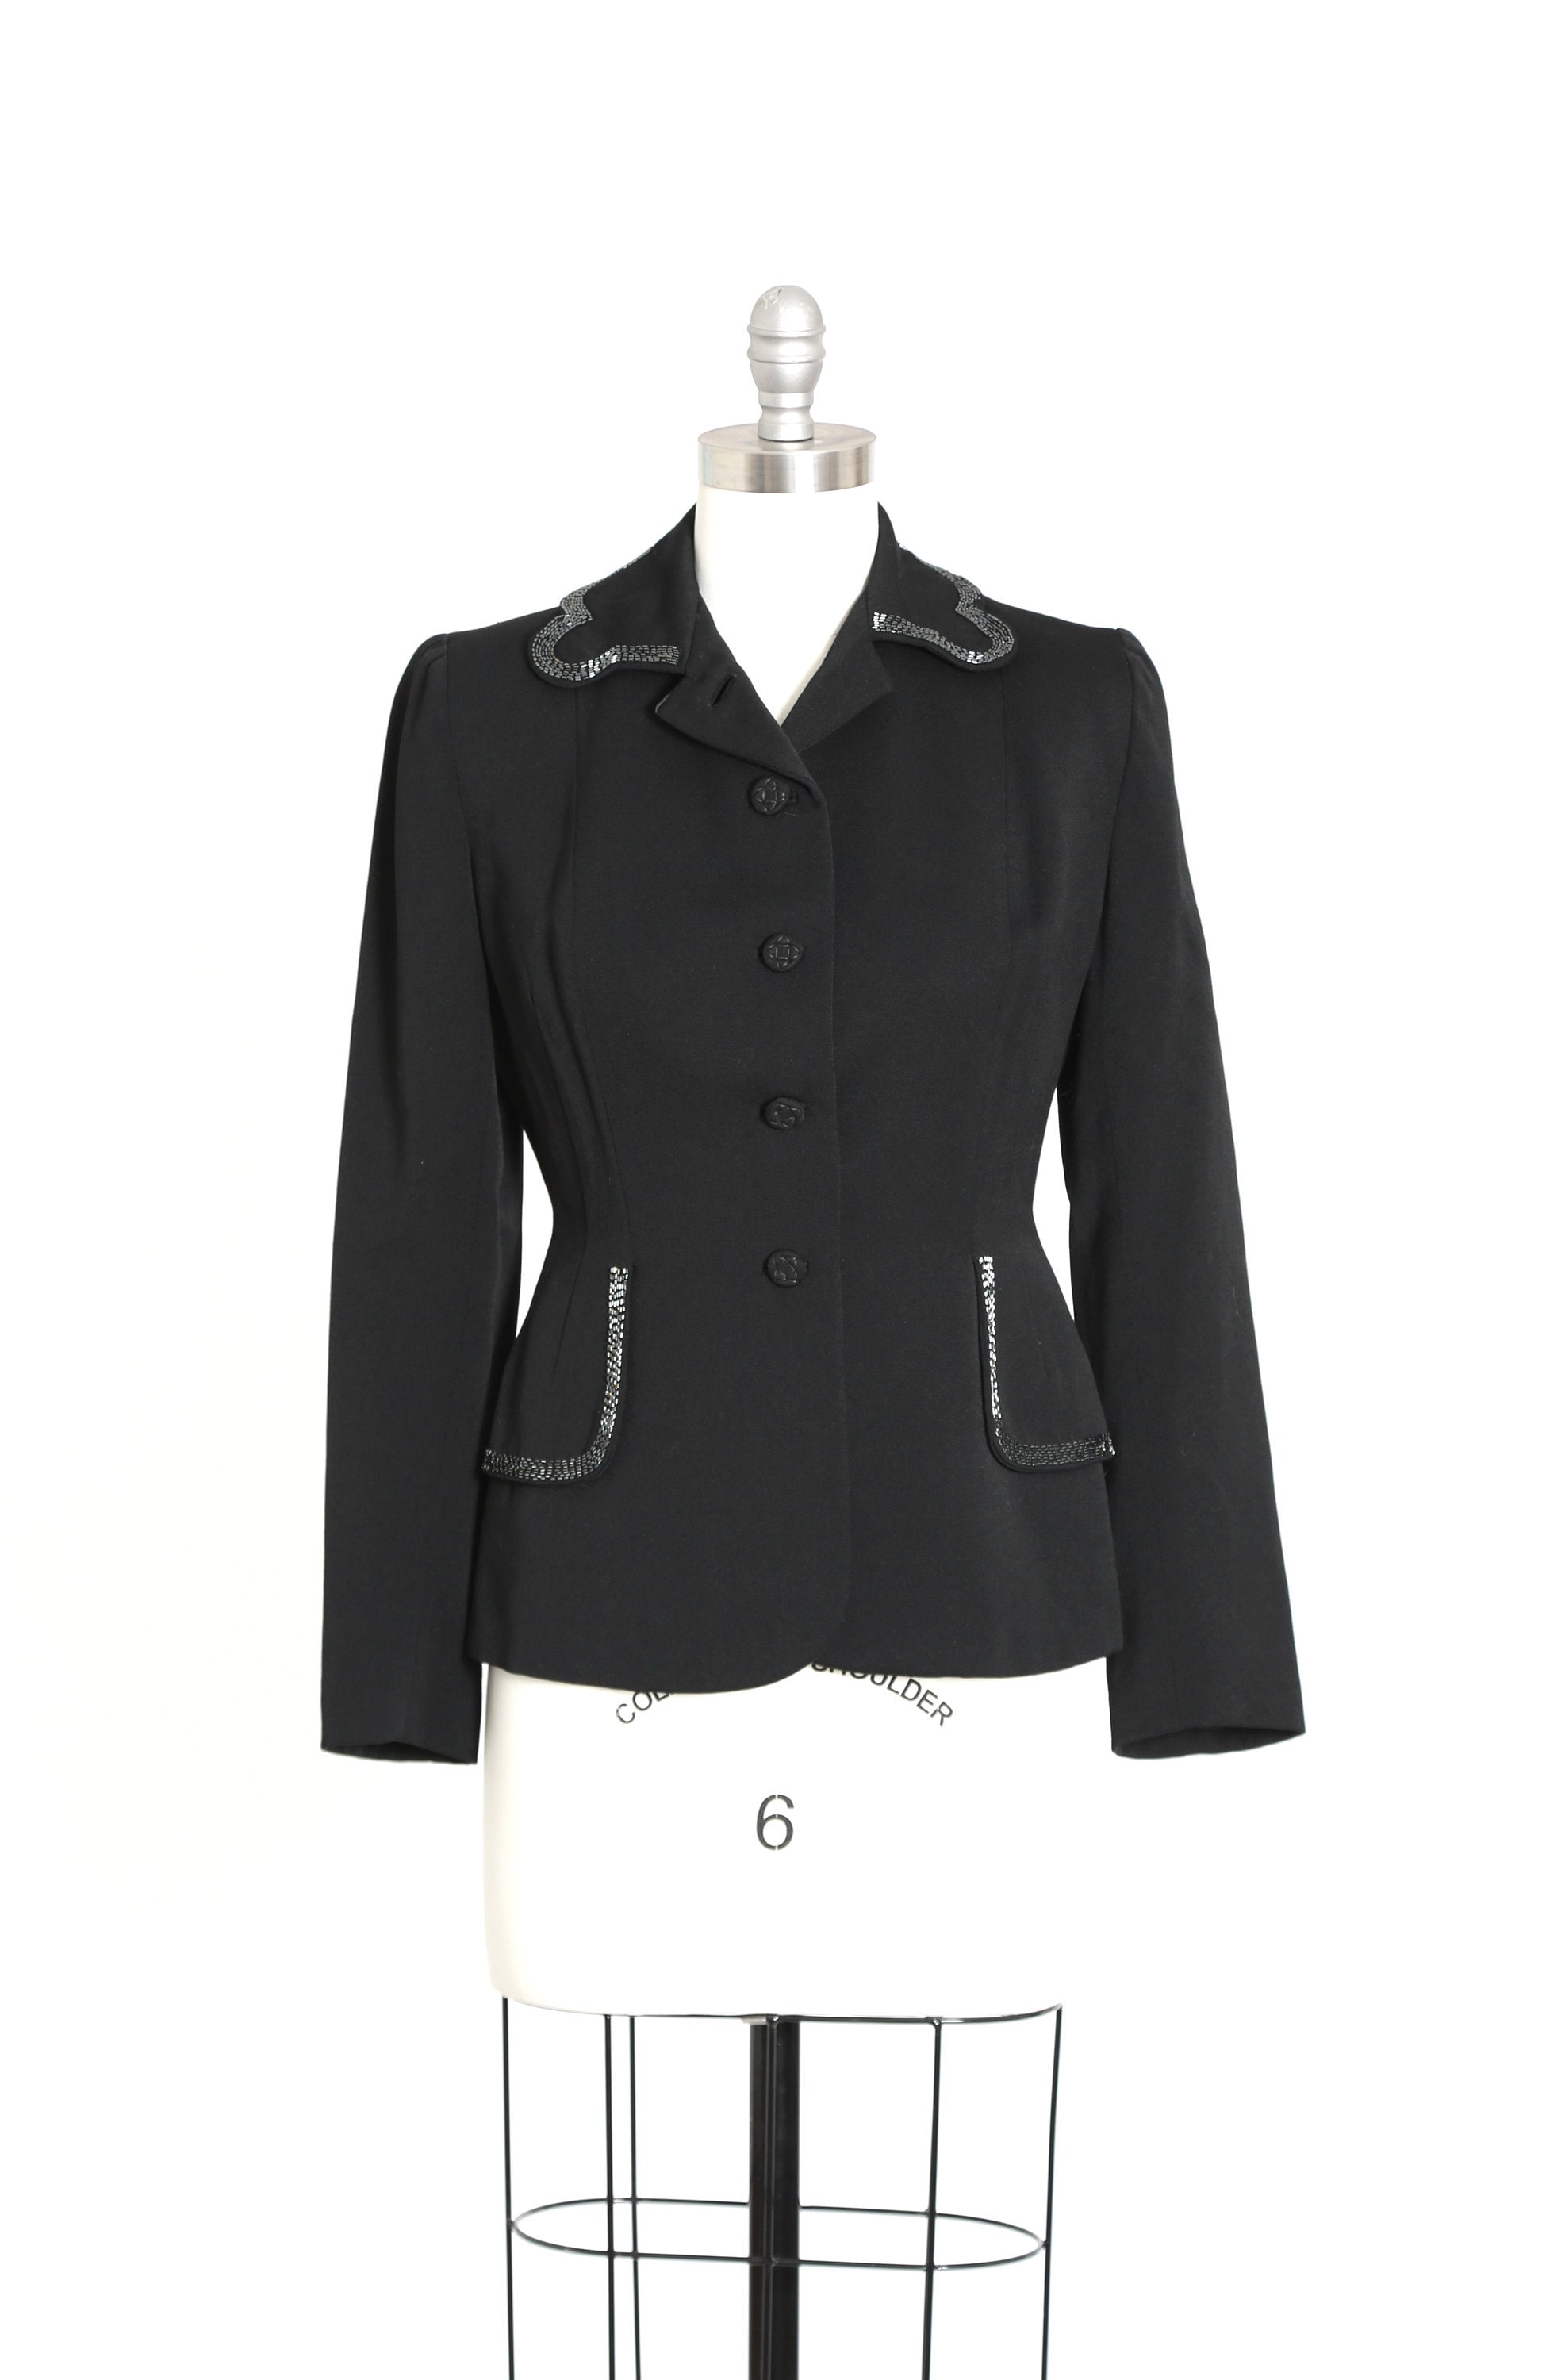 Real Vintage Search Engine 40S Beaded Blazer  Vintage Black Wool Hand 1940S Dress Suit Coat $240.00 AT vintagedancer.com